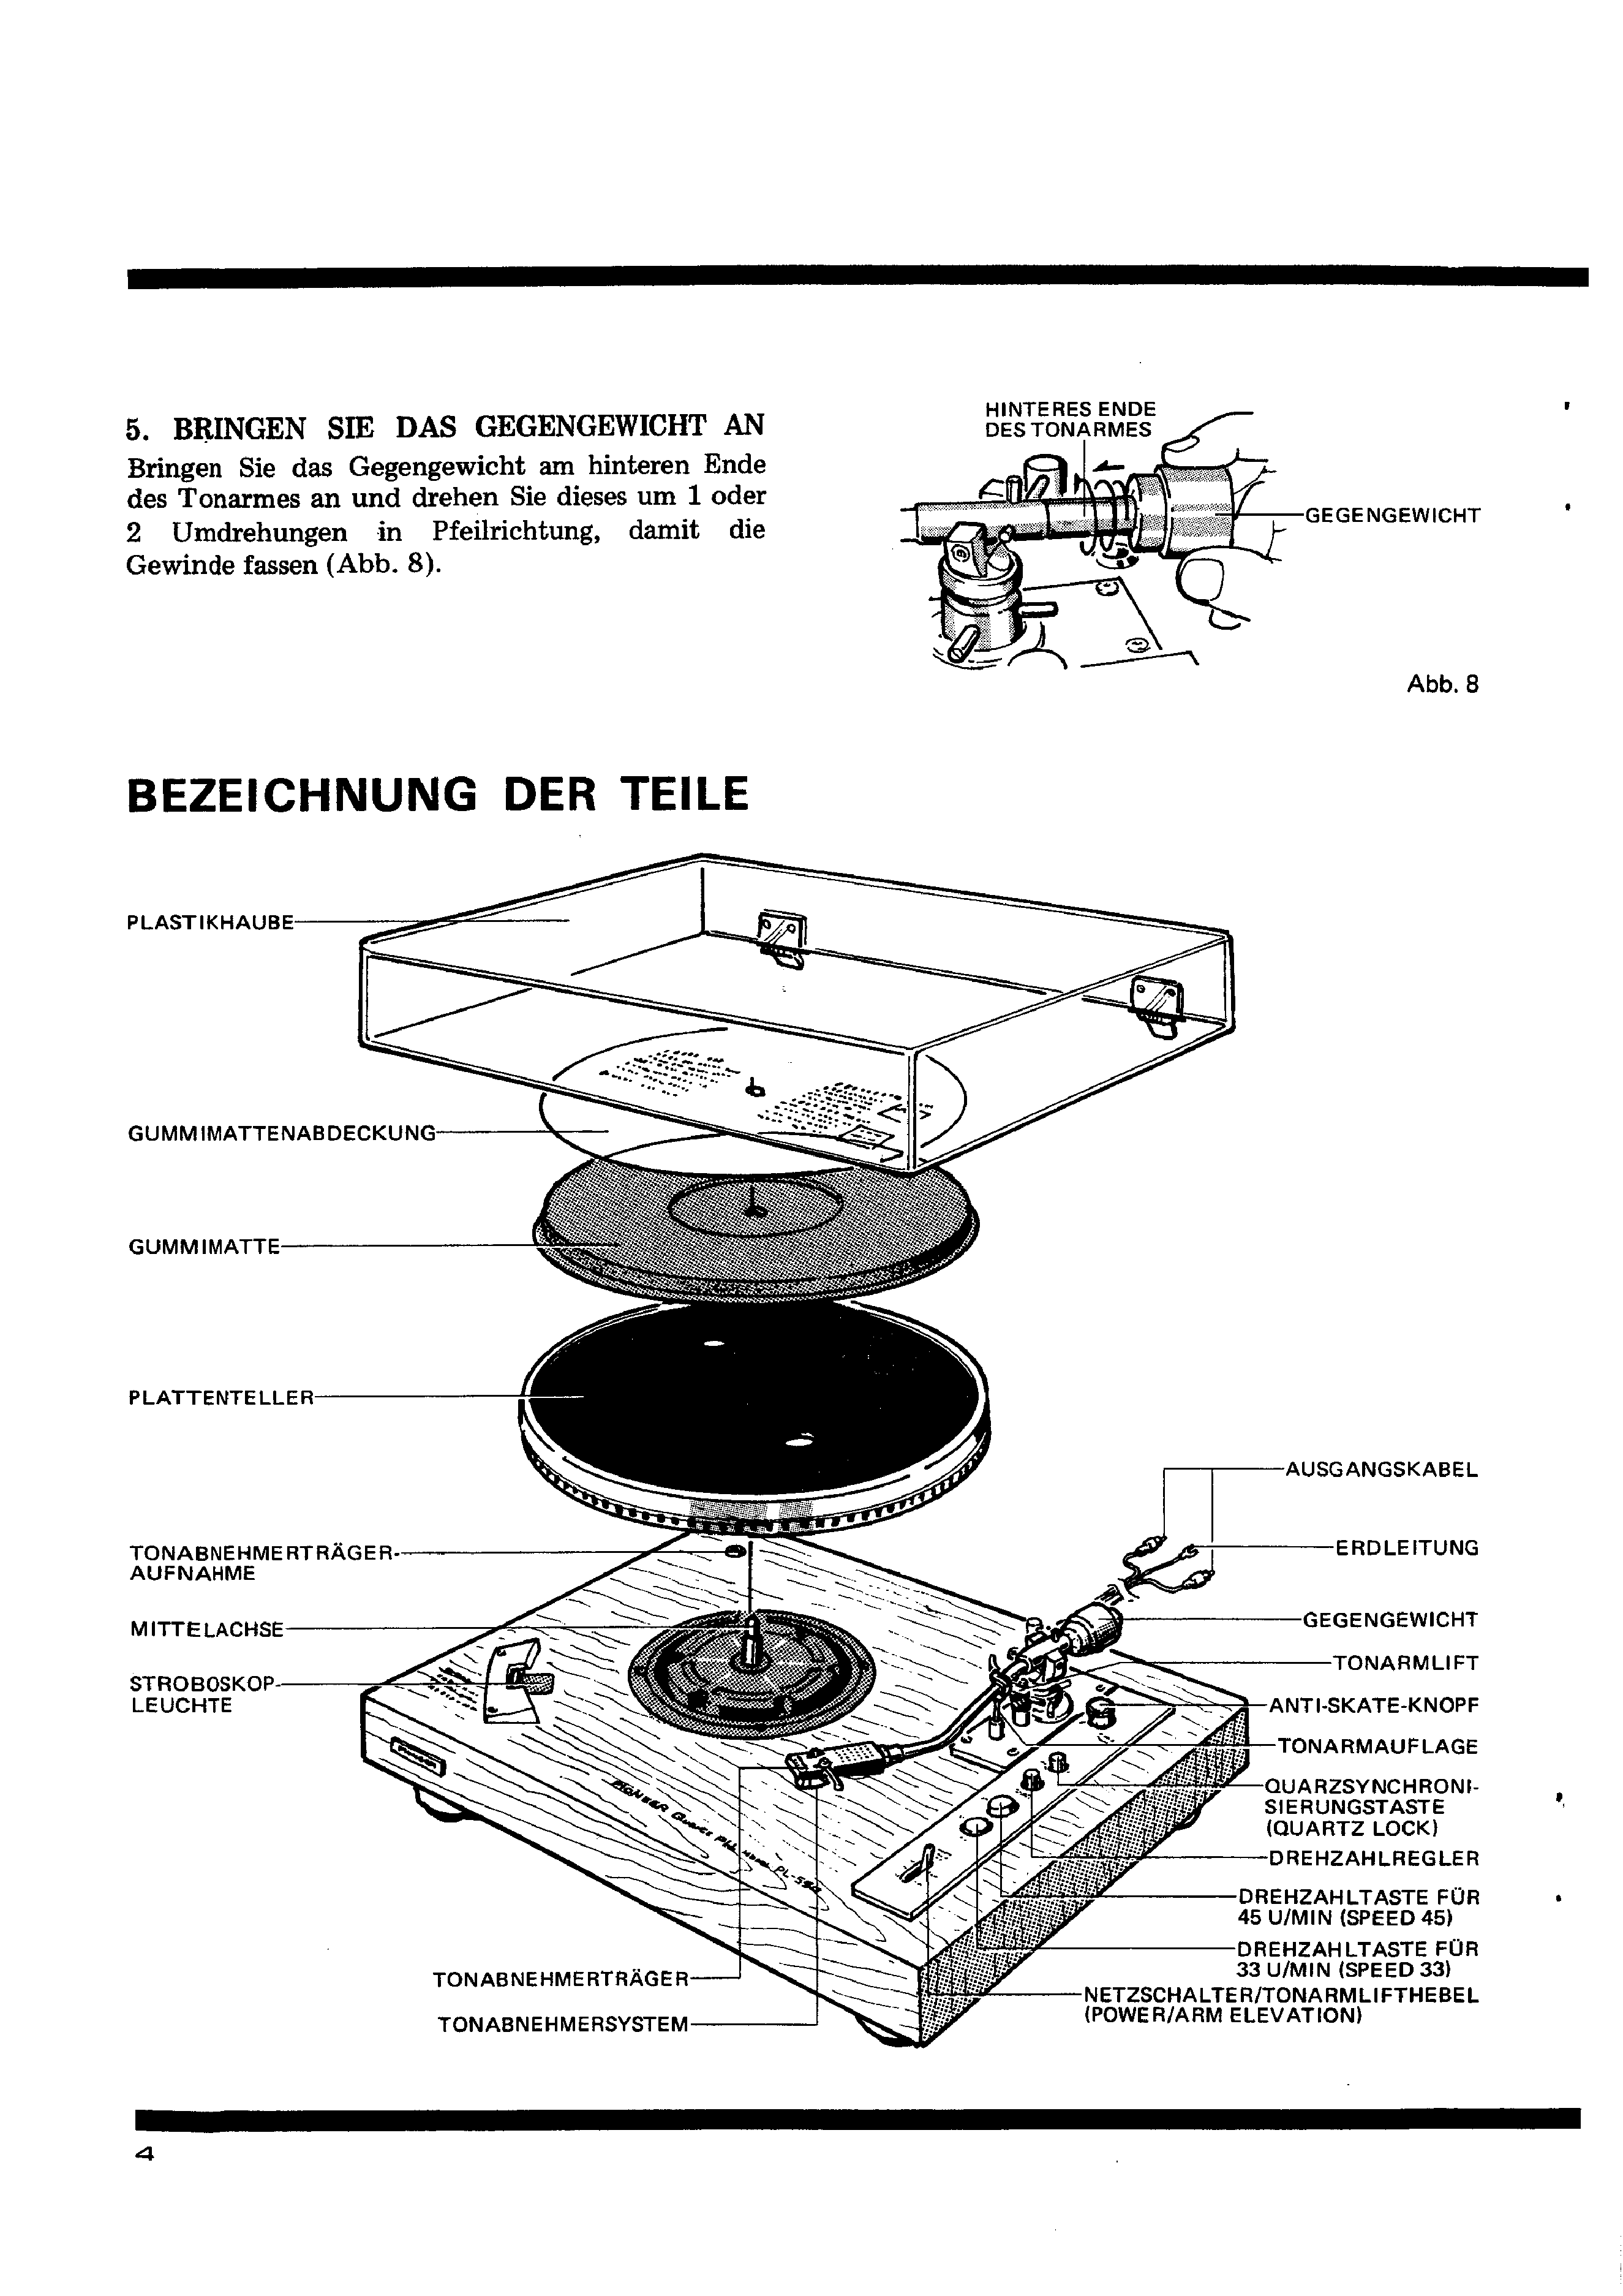 Service Manual-Anleitung für Pioneer PL-550 